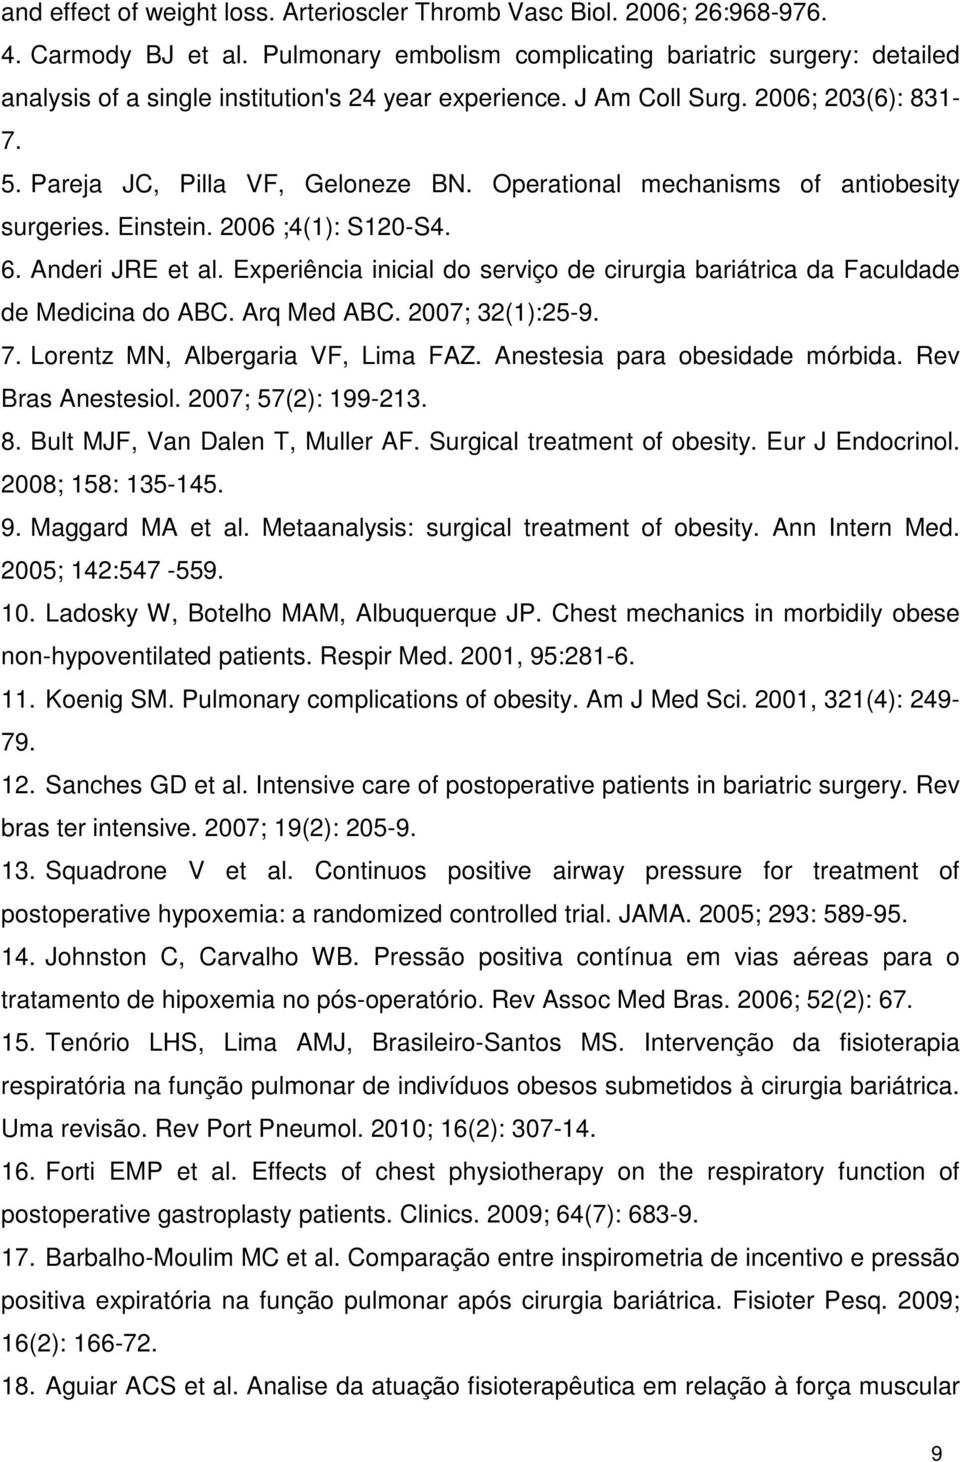 Operational mechanisms of antiobesity surgeries. Einstein. 2006 ;4(1): S120-S4. 6. Anderi JRE et al. Experiência inicial do serviço de cirurgia bariátrica da Faculdade de Medicina do ABC. Arq Med ABC.